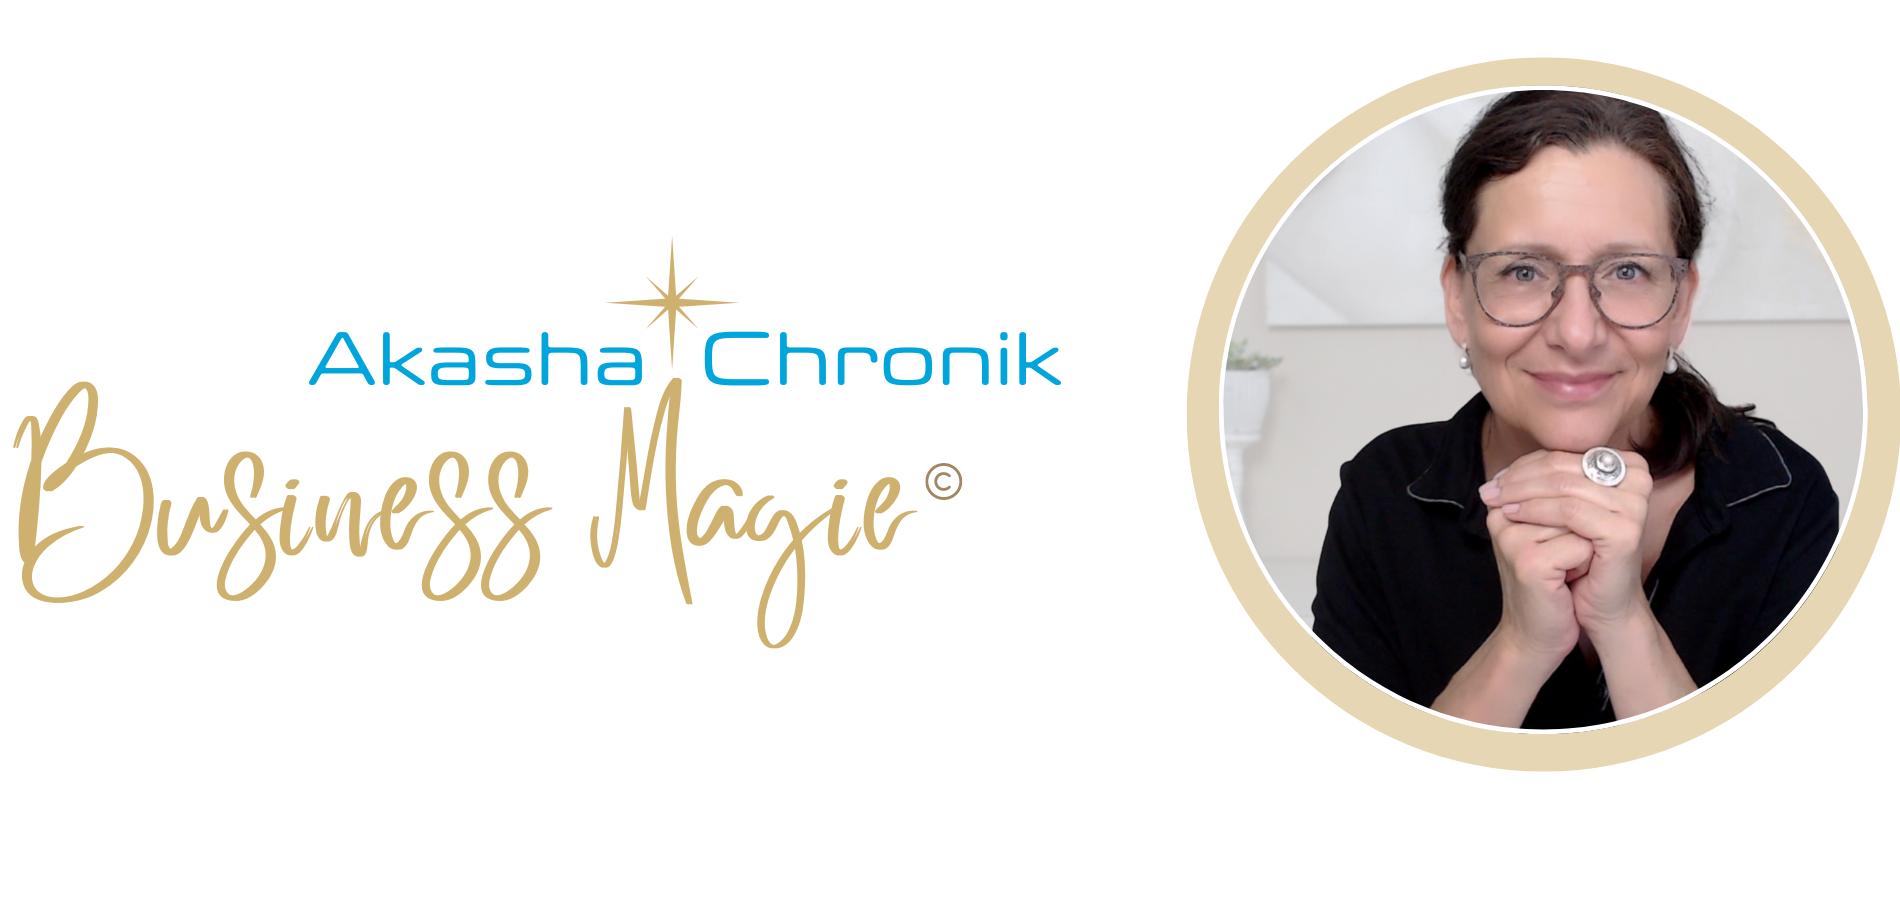 Akasha Chronik Business Magie by Dörte Scheffer